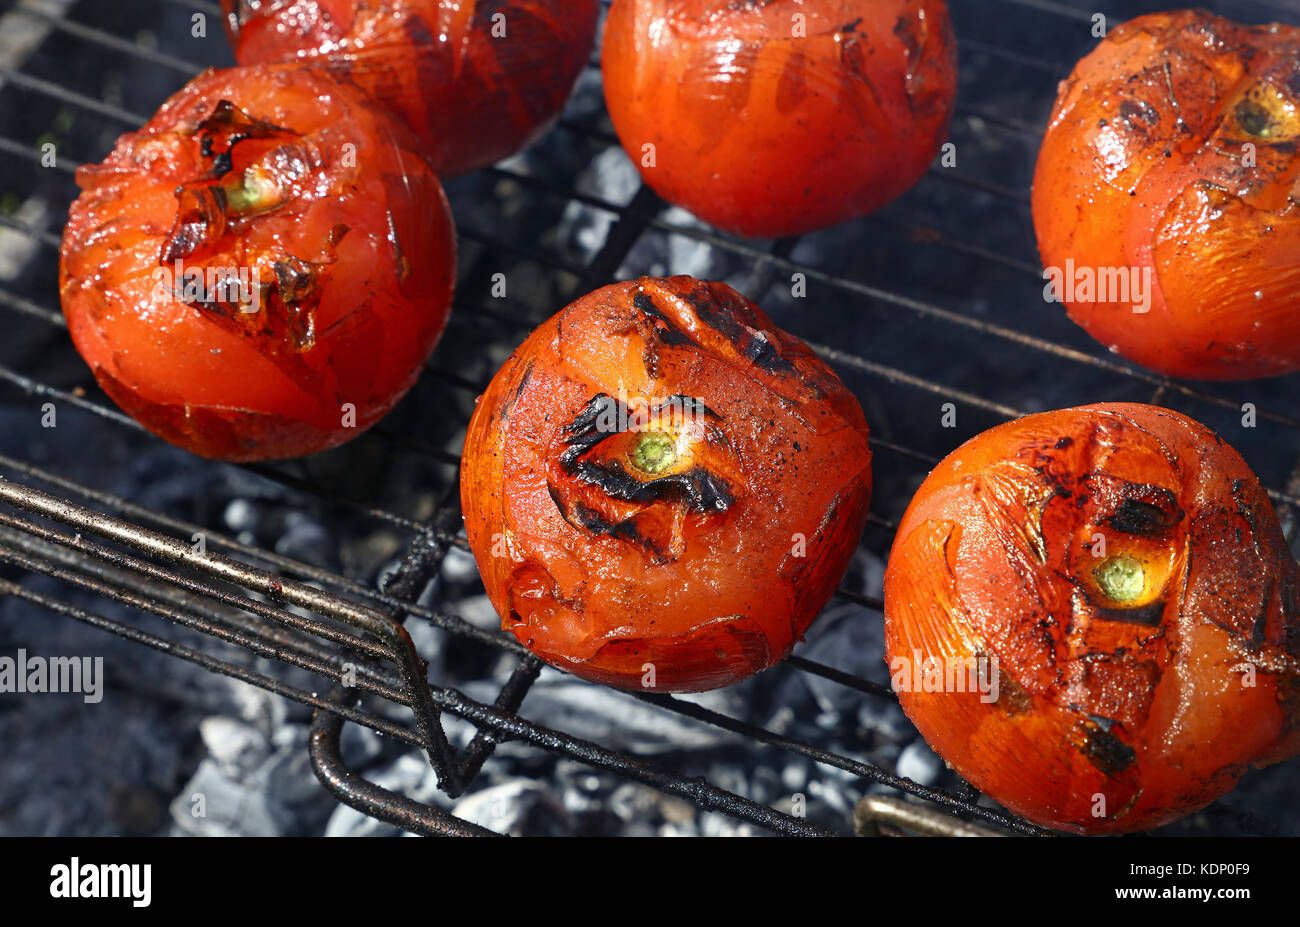 Les tomates rouges avec grillemarks la cuisson sur barbecue char avec de la fumée, Close up, high angle view Banque D'Images